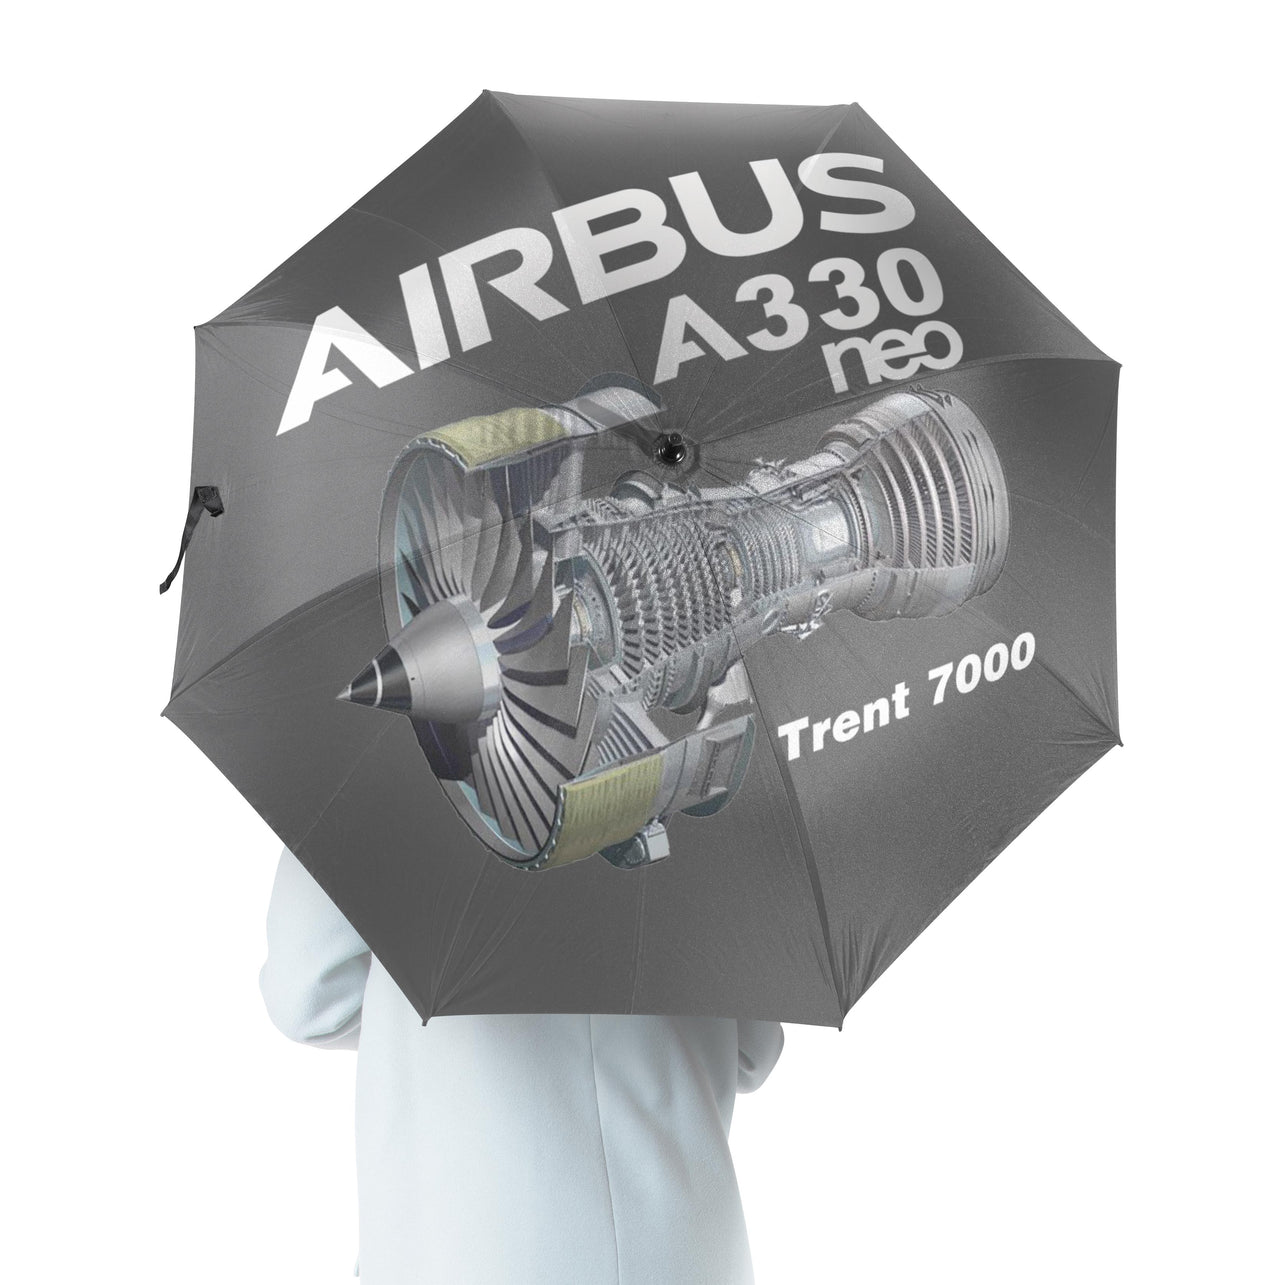 Airbus A330neo & Trent 7000 Designed Umbrella